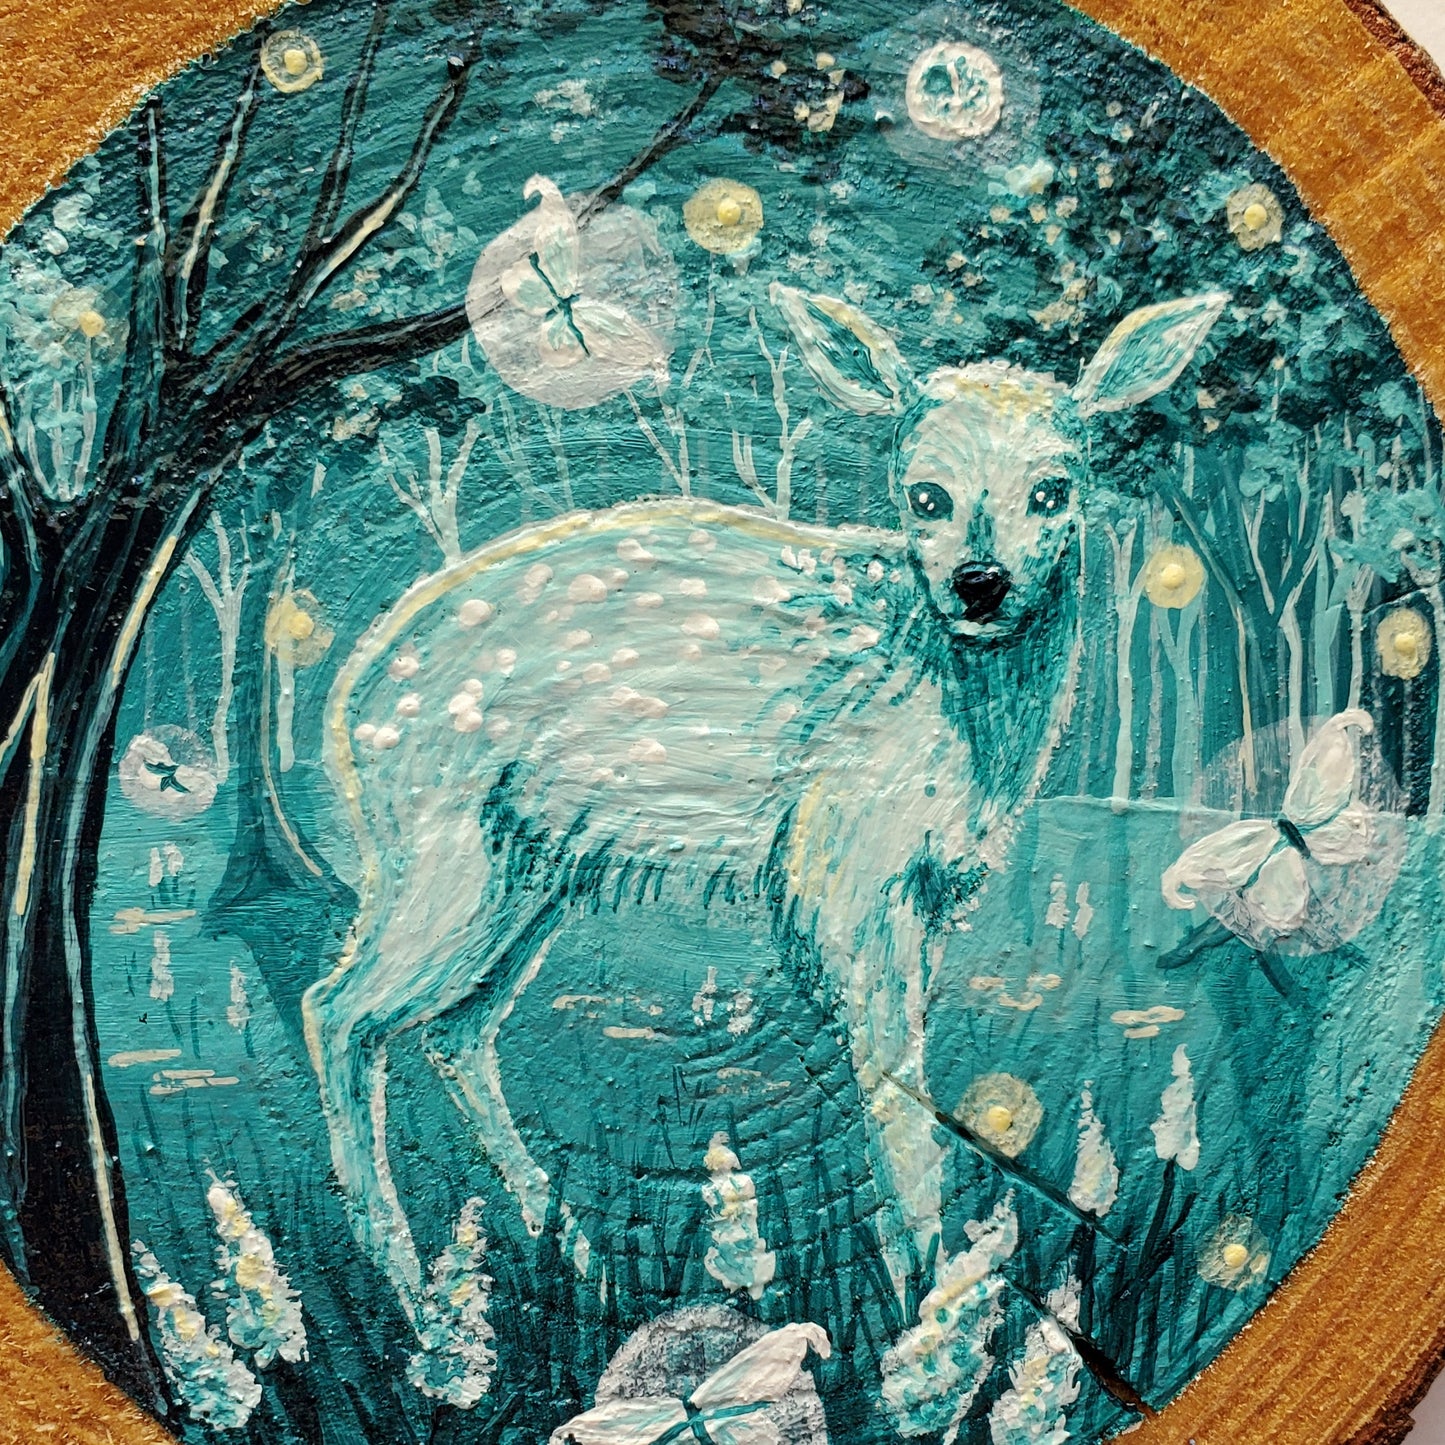 Mini Deer Portal Painting on Wood